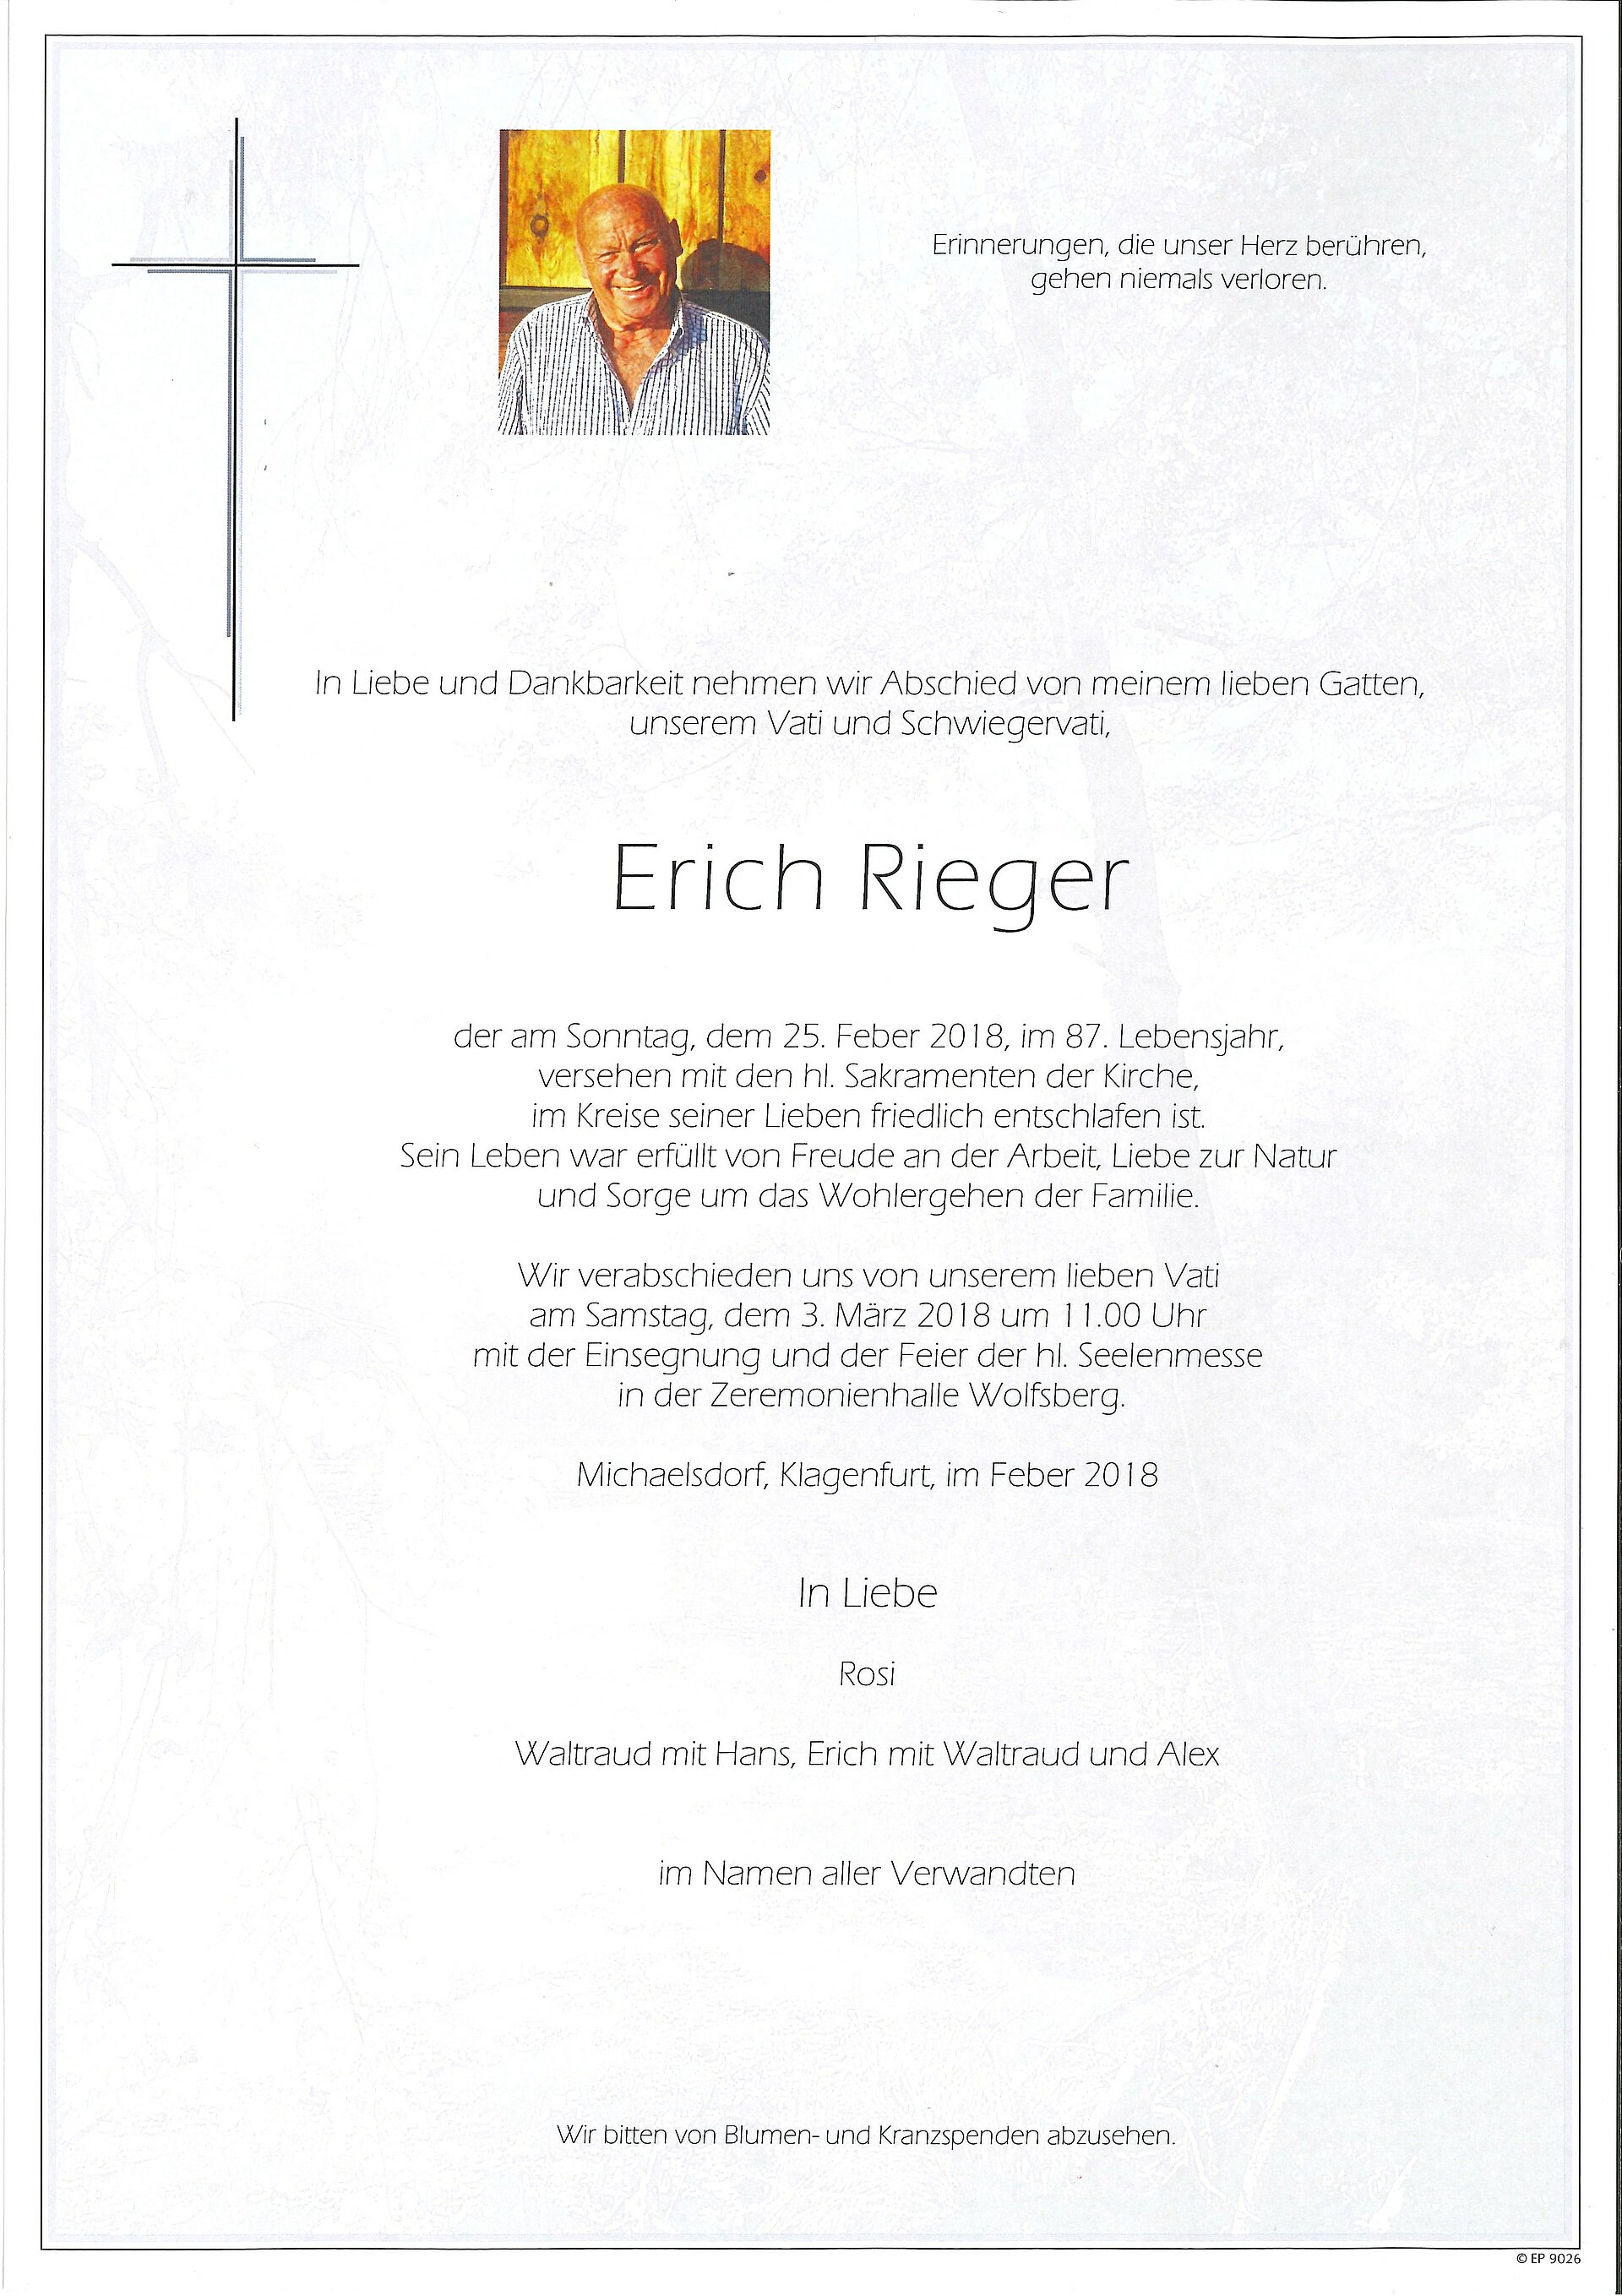 Rieger-Erich.jpg